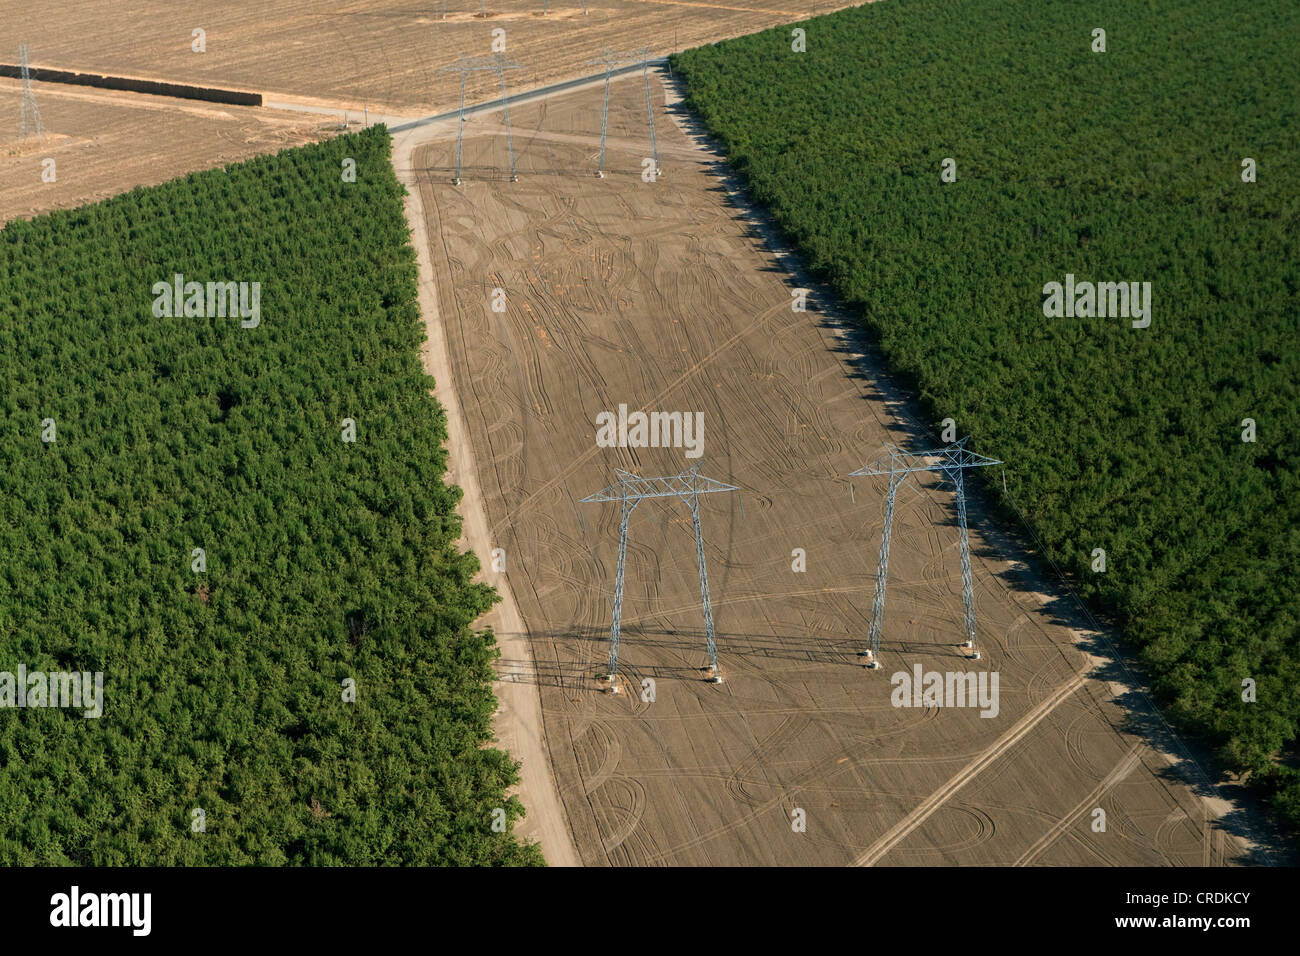 Vue aérienne de pylônes électriques dans le paysage agricole de la Vallée Centrale, Fresno, Californie, États Unis, Amérique du Nord Banque D'Images